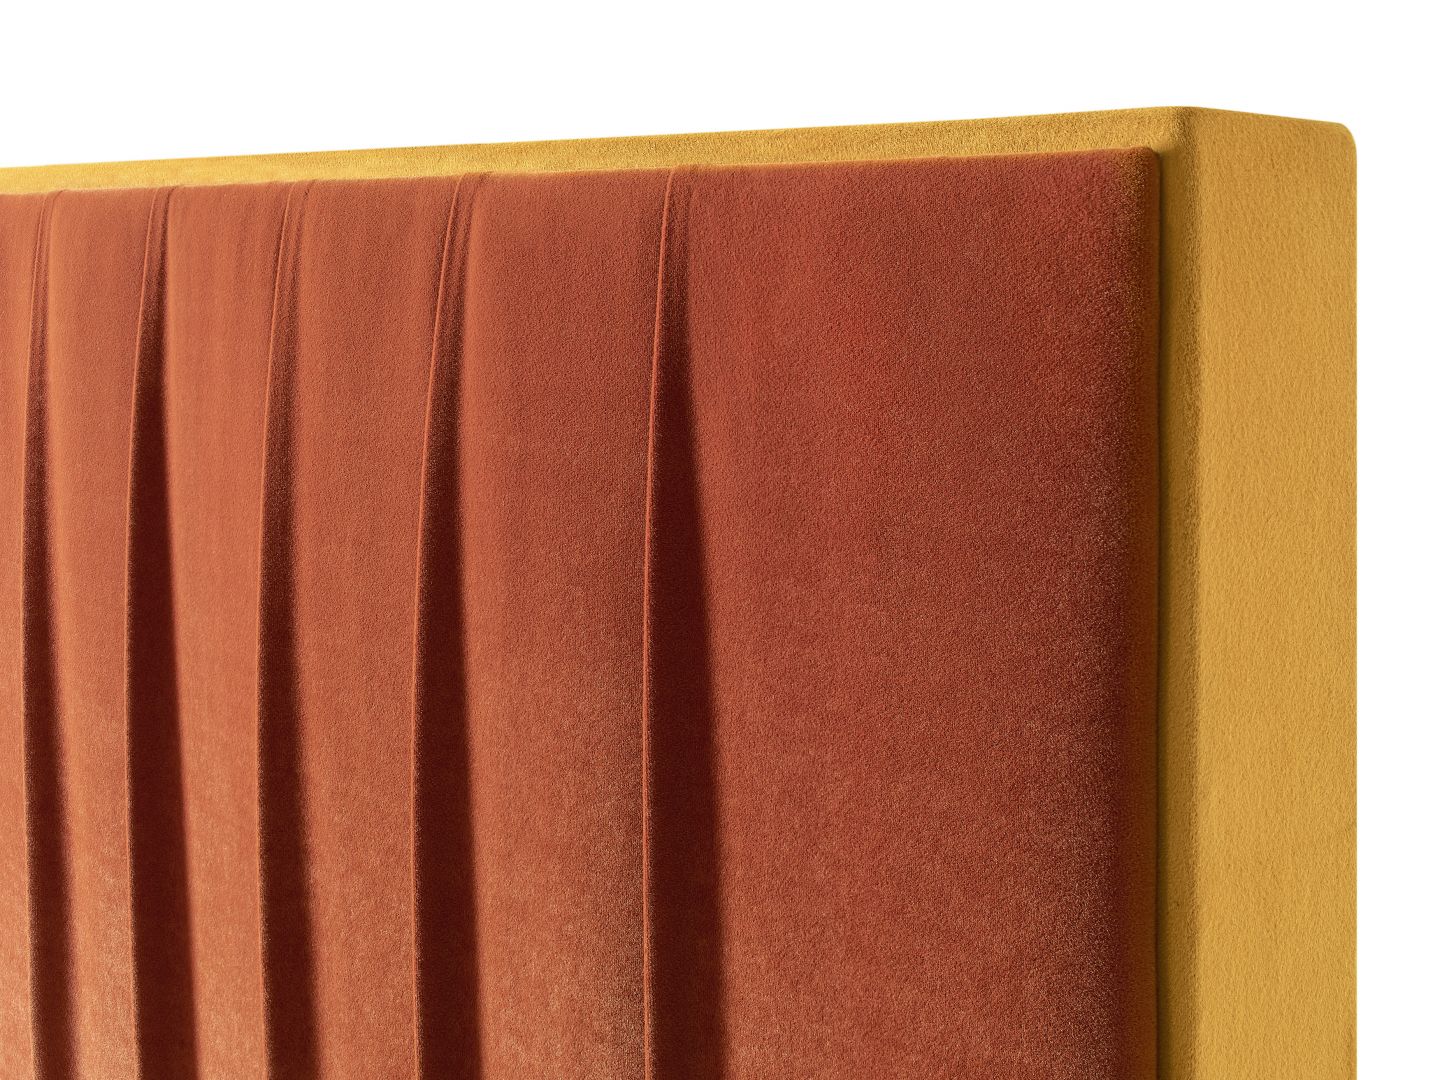 Kolekcja łóżek tapicerowanych Palermo/Emilia Meble. Produkt zgłoszony do konkursu Dobry Design 2020.